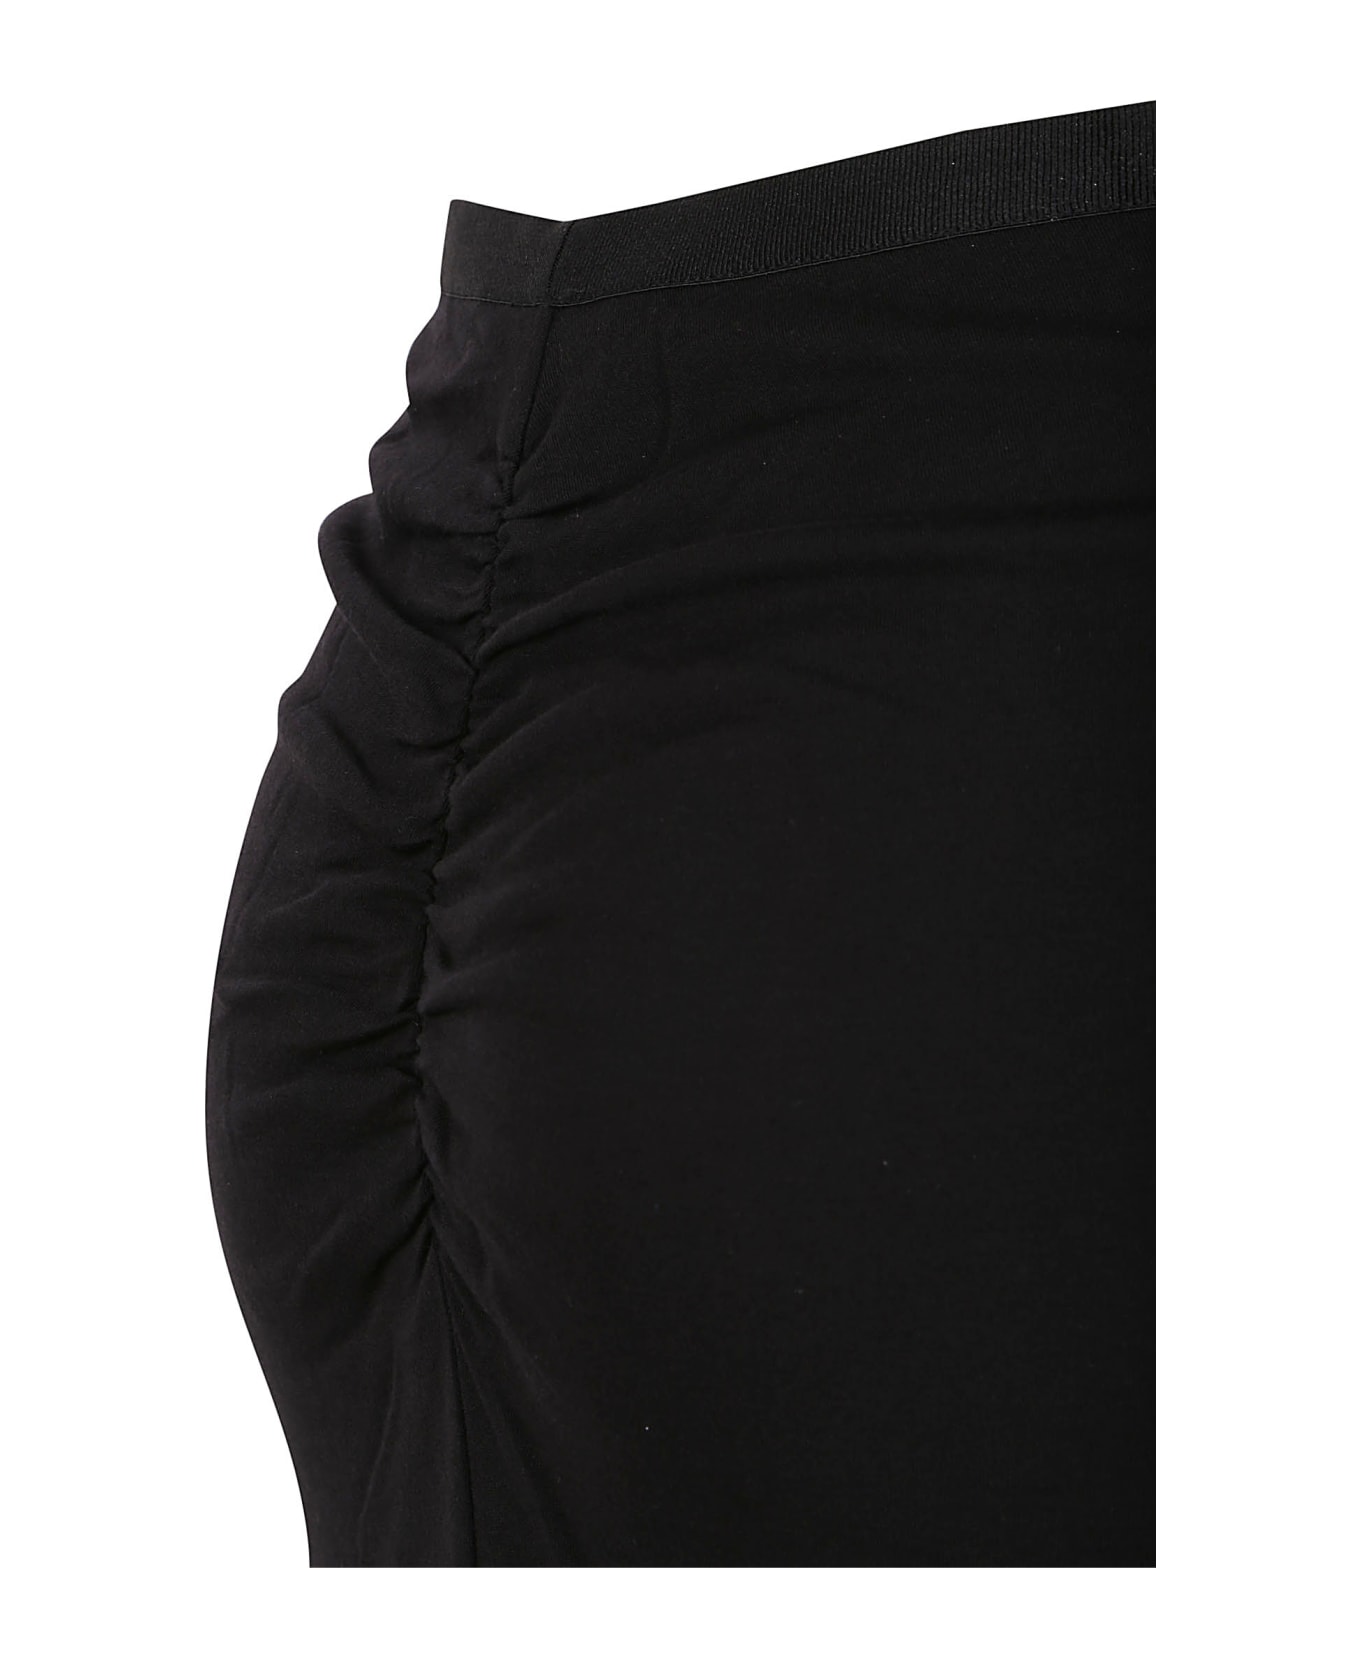 Diane Von Furstenberg Skirts Black - Black スカート